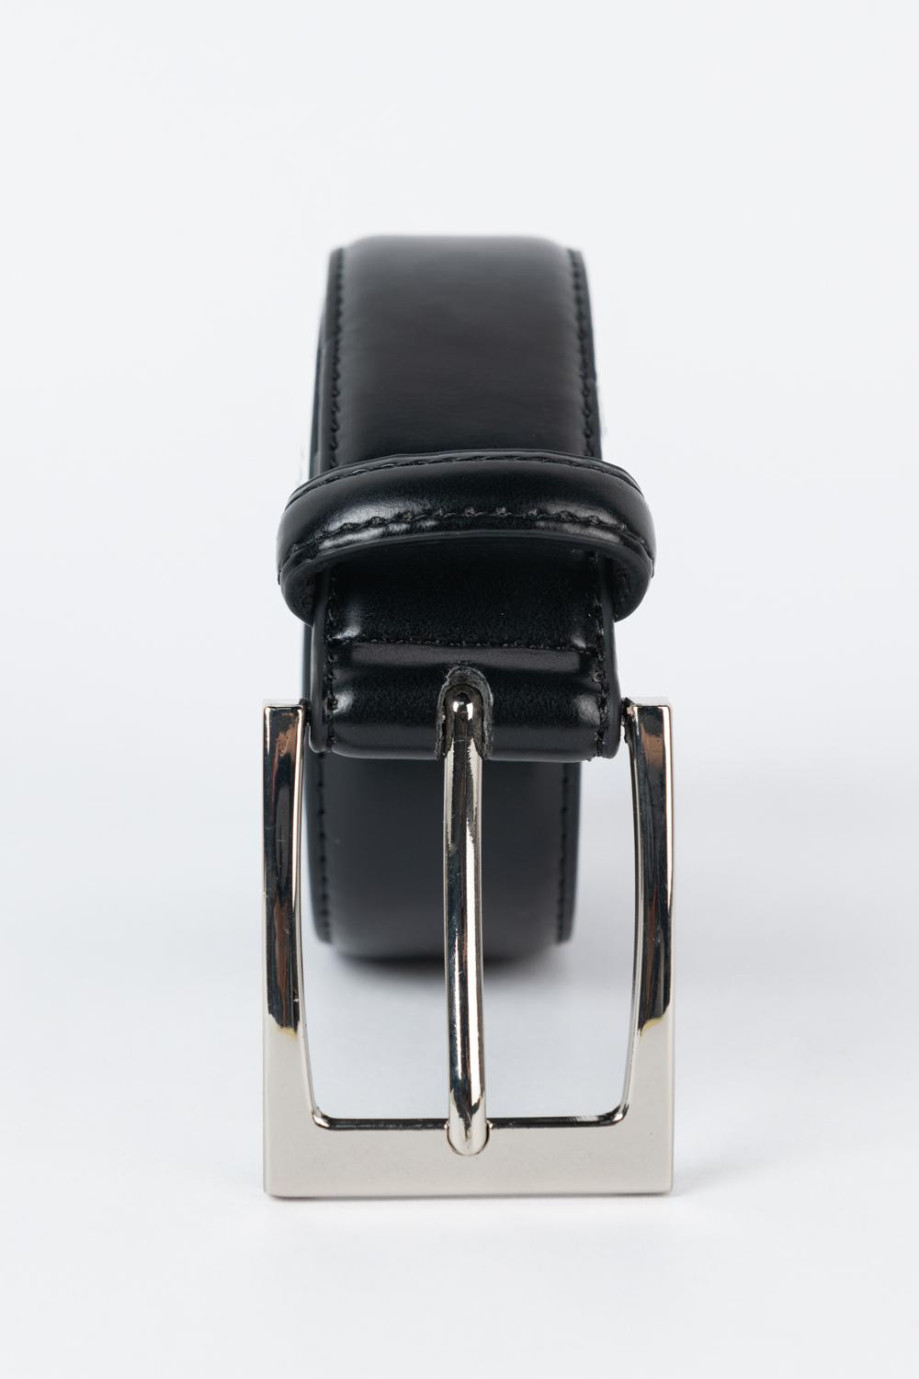 Cinturón negro sintético con hebilla cuadrada y textura lisa